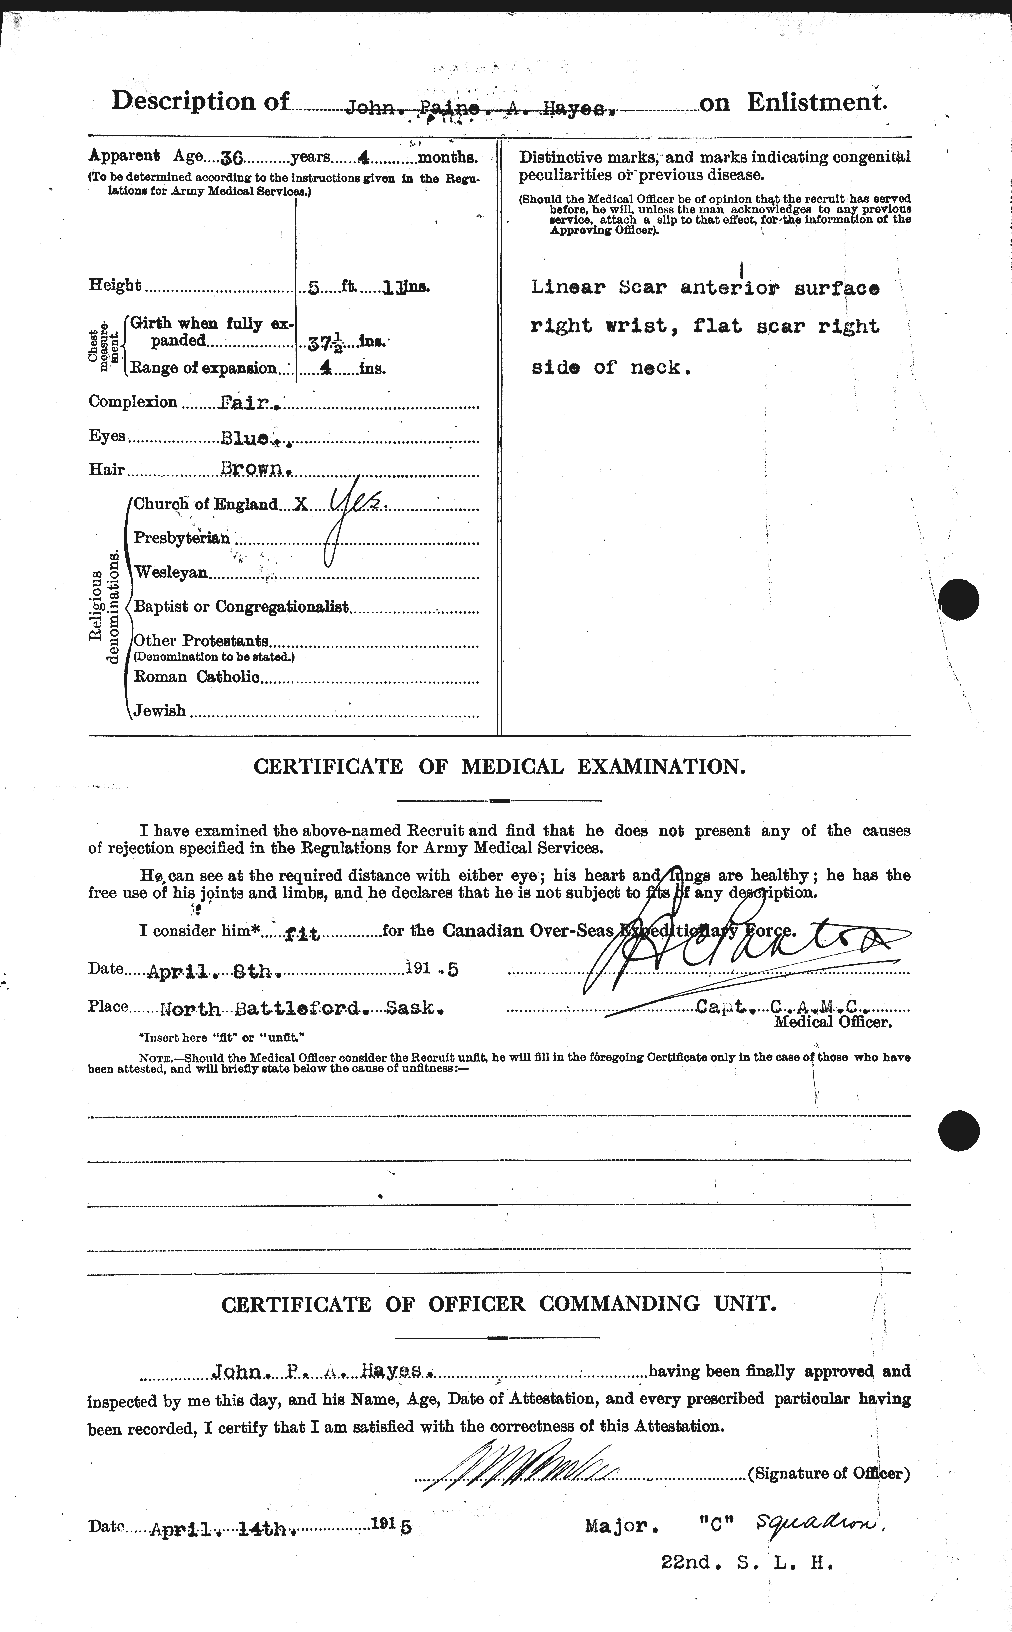 Dossiers du Personnel de la Première Guerre mondiale - CEC 385585b